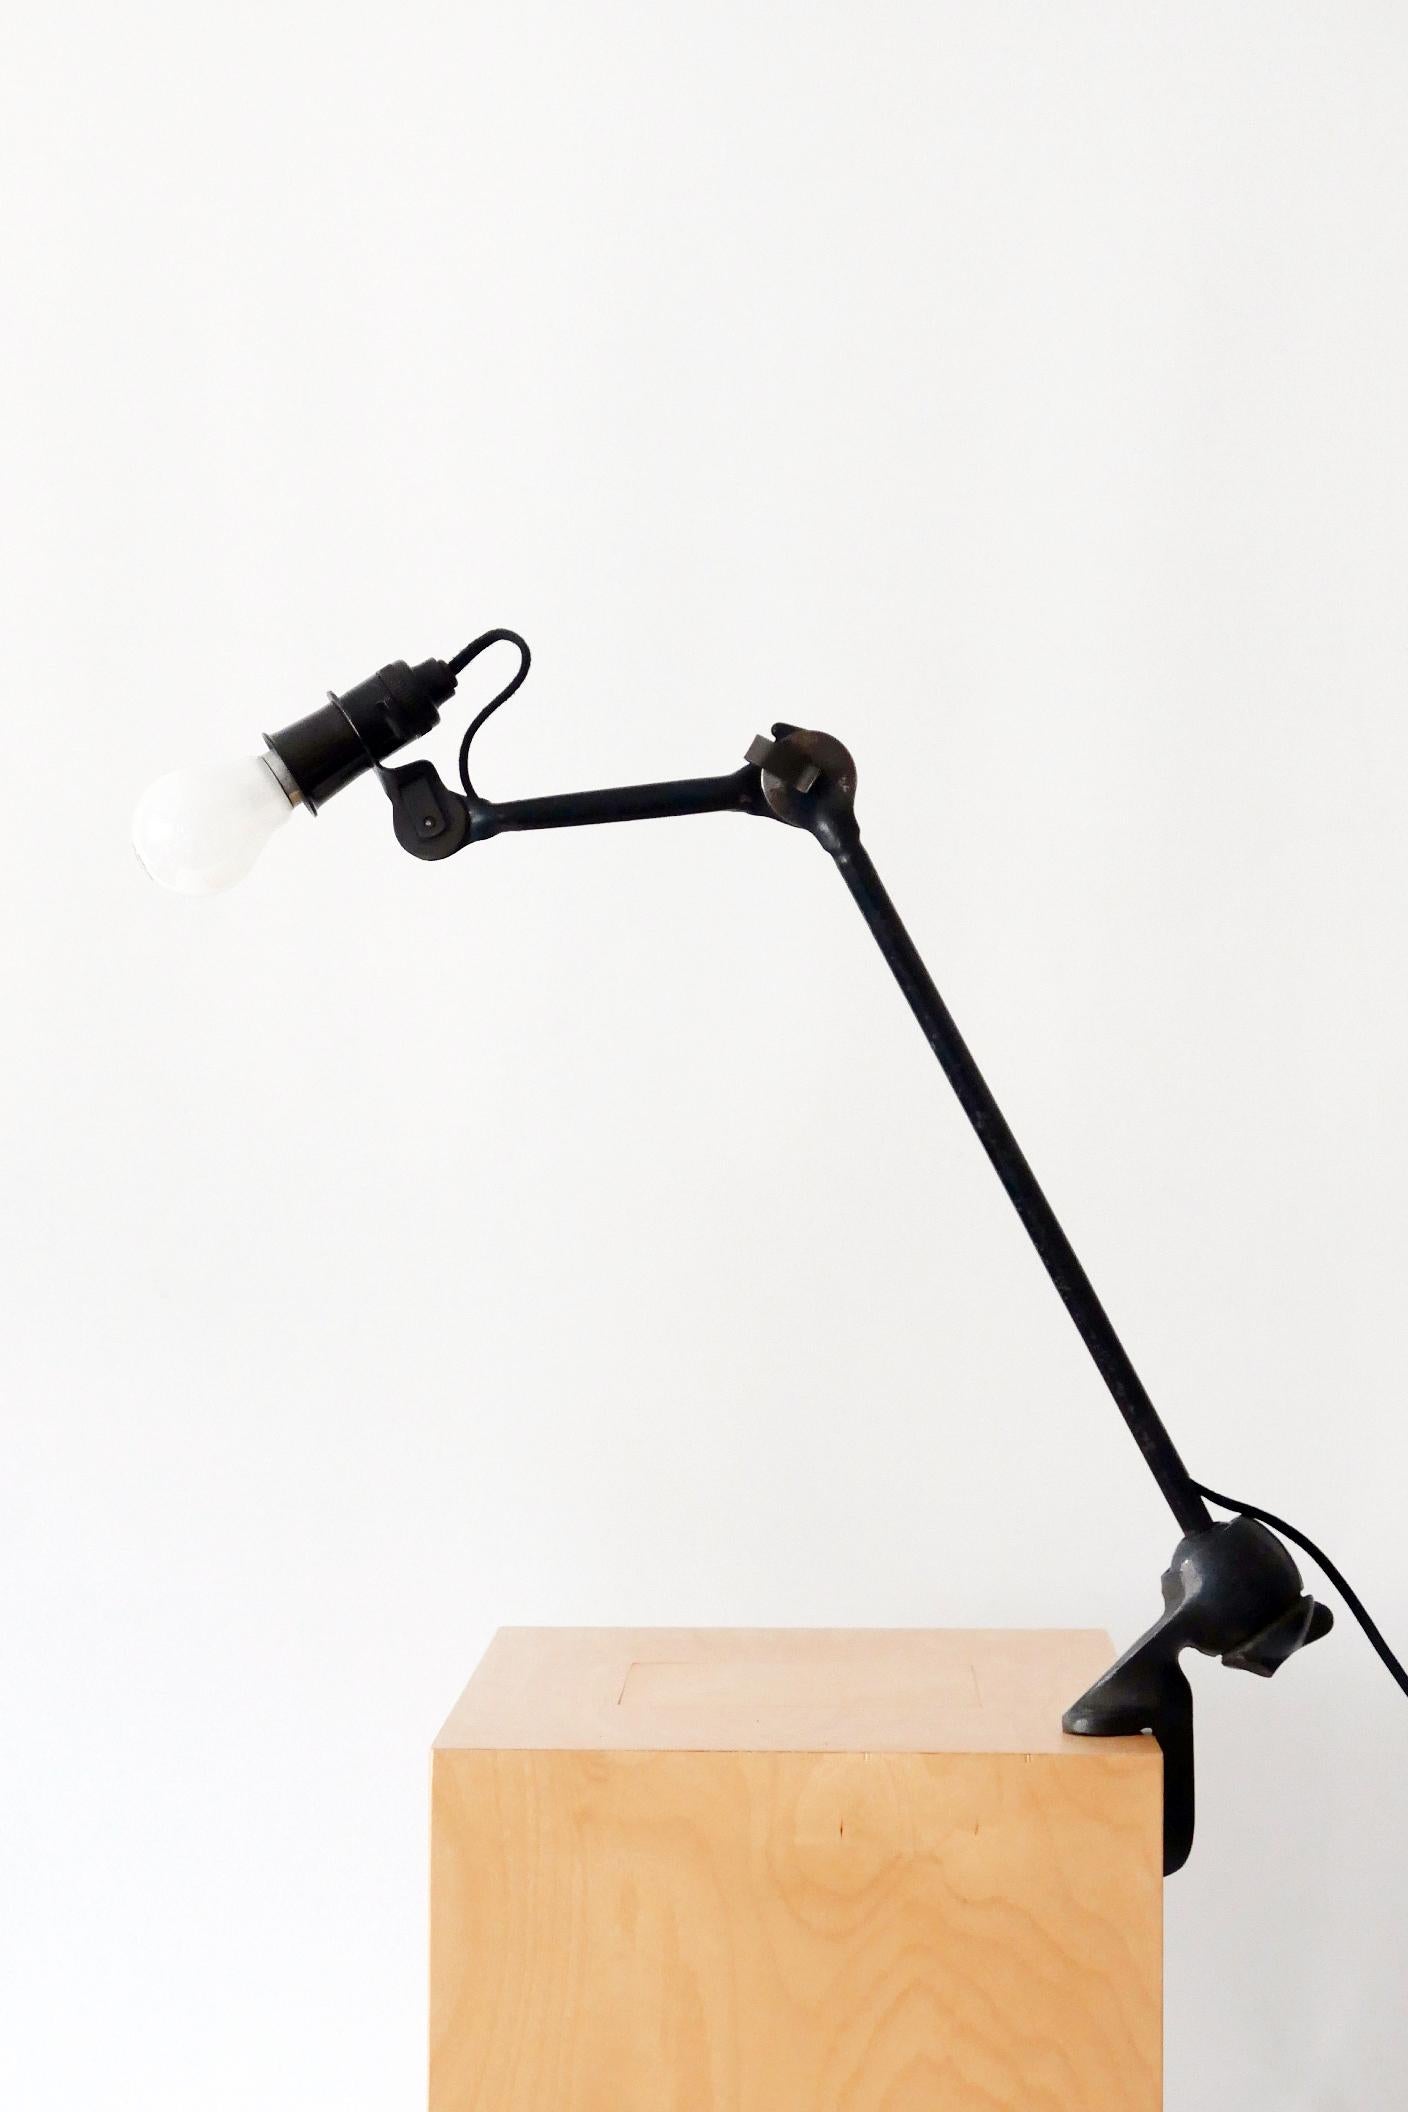 Modernist Task Light or Clamp Table Lamp by Bernard-Albin Gras for Gras, 1920s For Sale 2